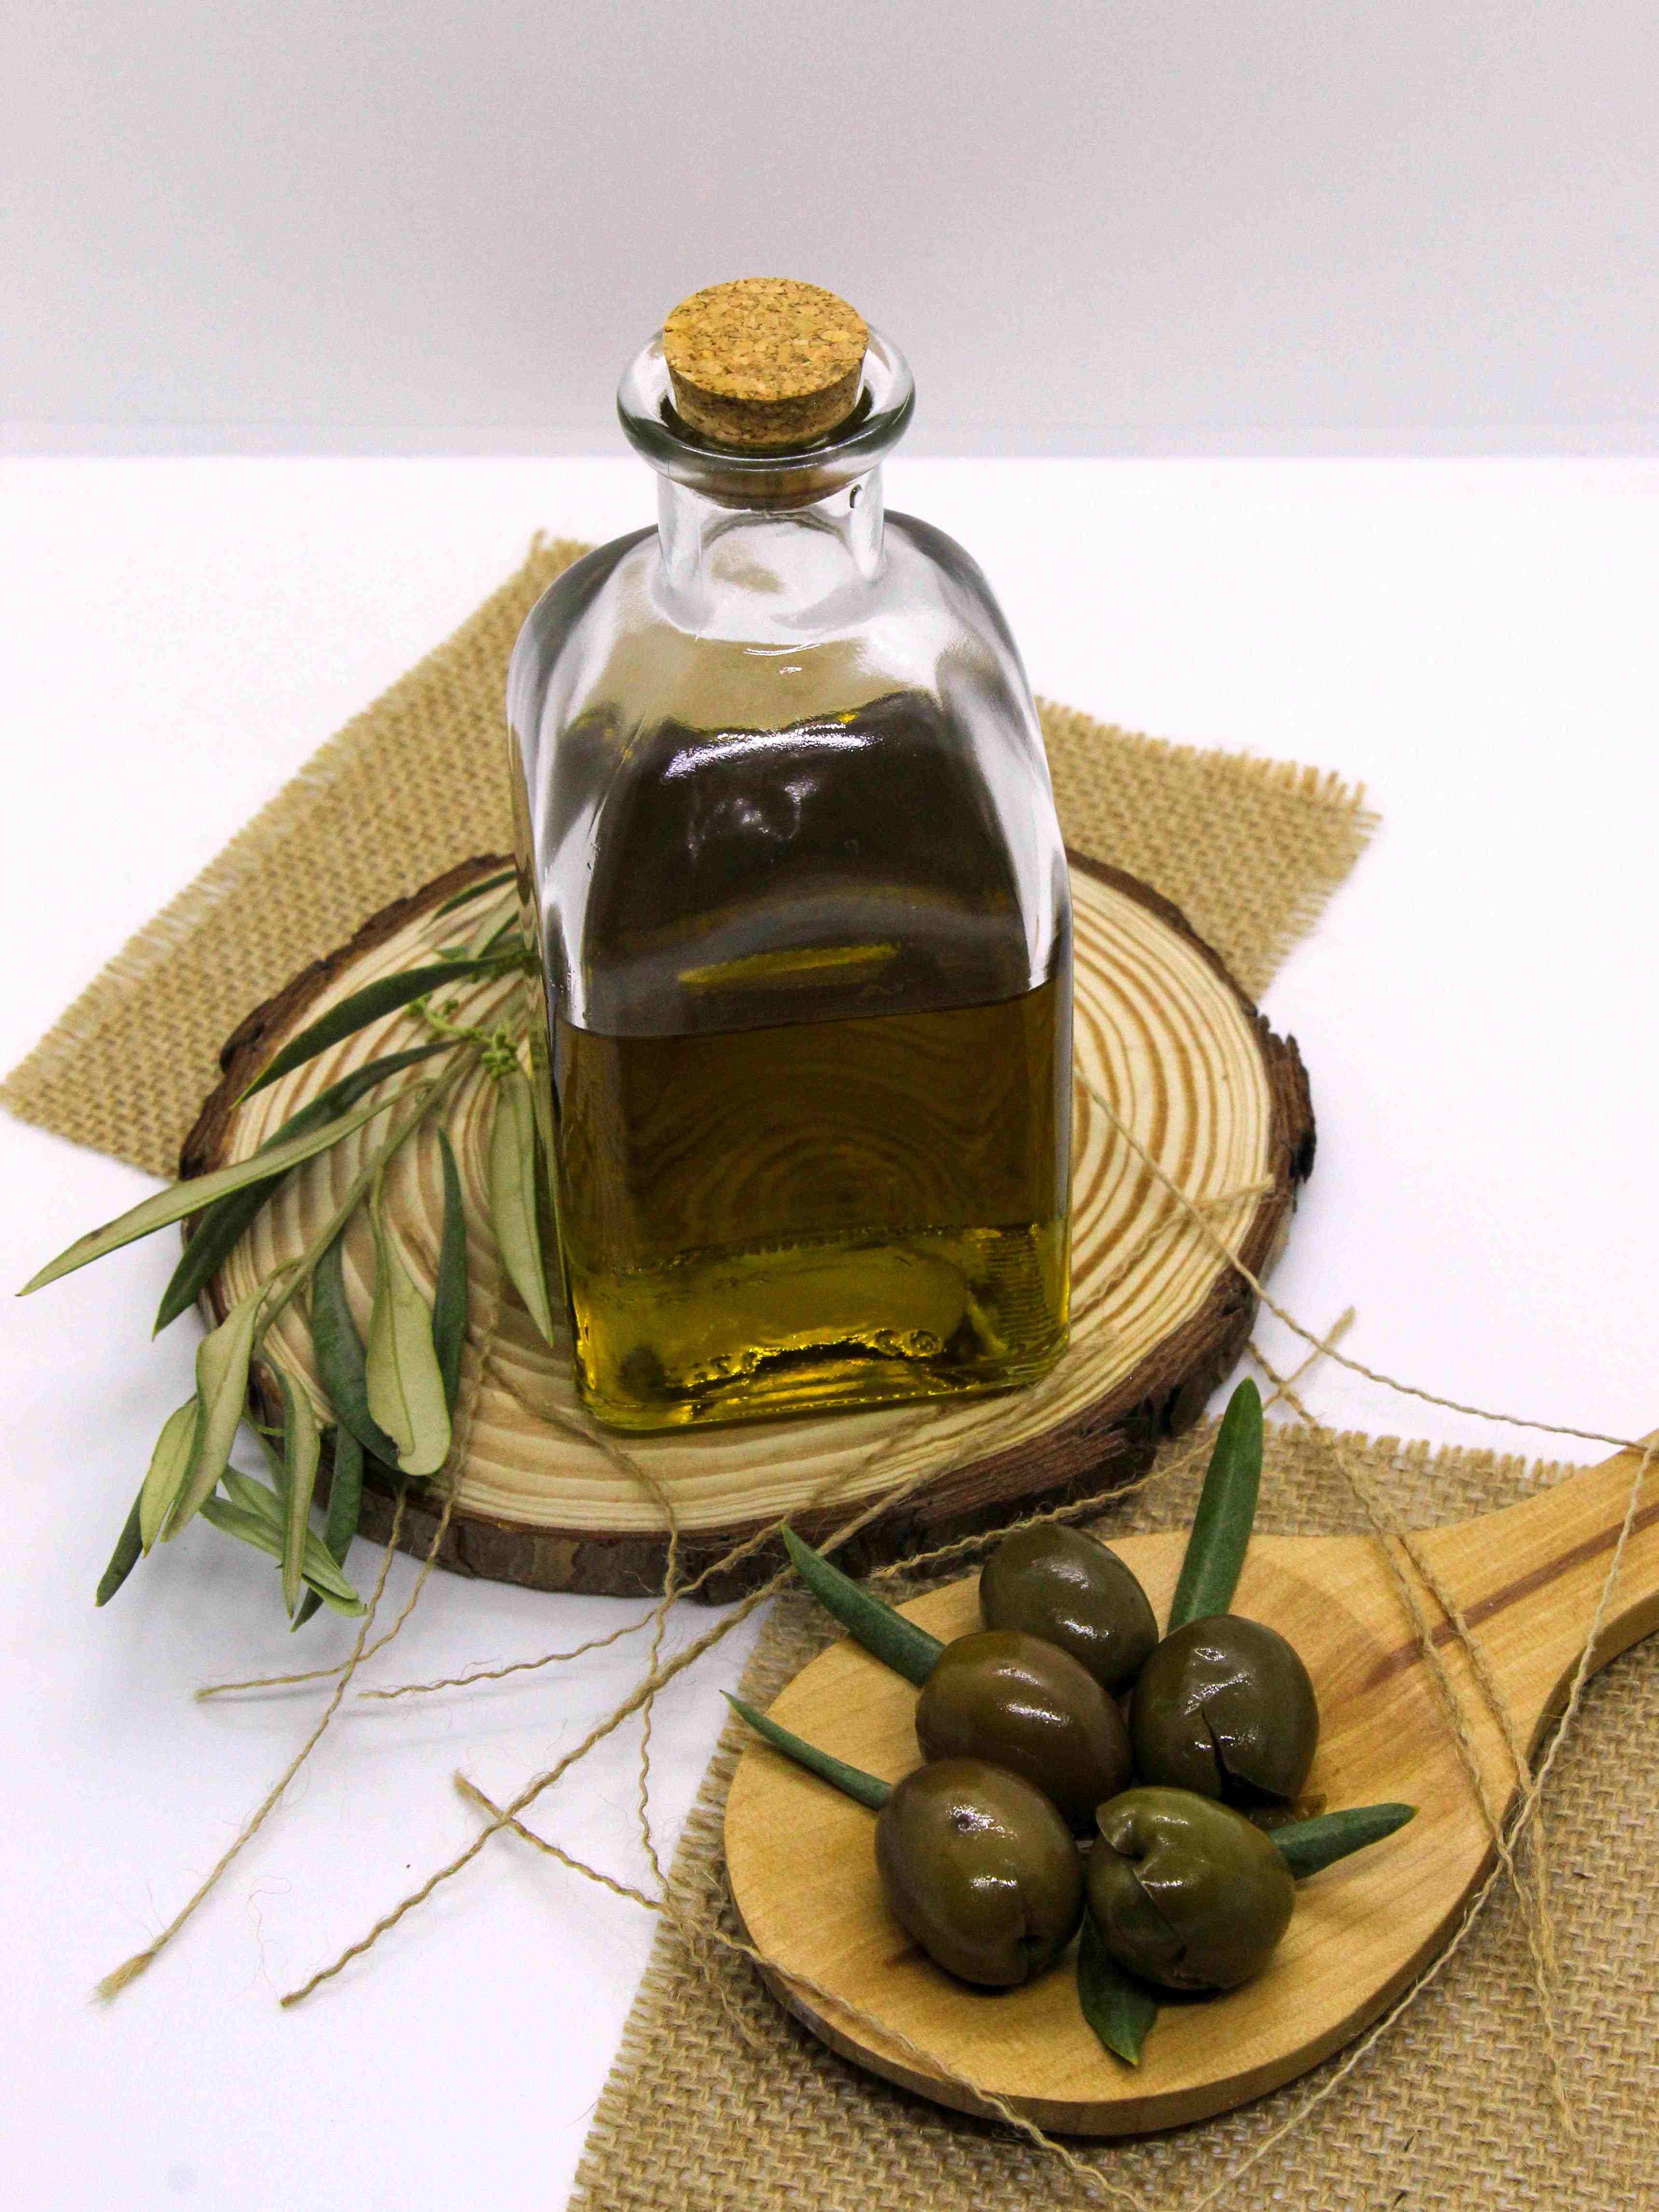 Aceite de oliva virgen extra: en España cuesta 8,7 euros el litro y en Portugal 6,8 euros